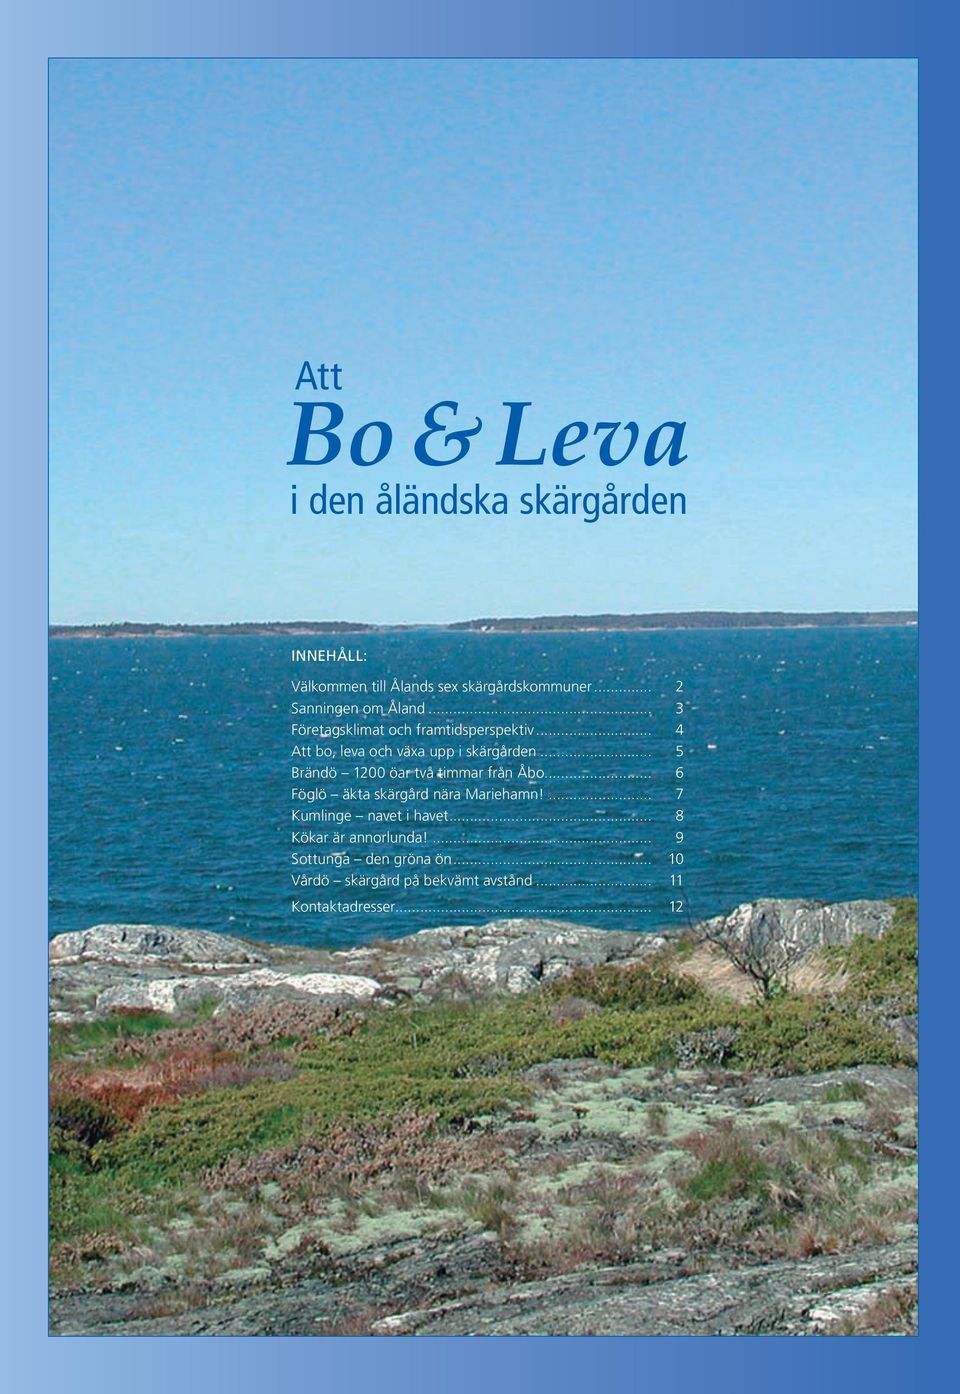 .. 5 Brändö 1200 öar två timmar från Åbo... 6 Föglö äkta skärgård nära Mariehamn!... 7 Kumlinge navet i havet.